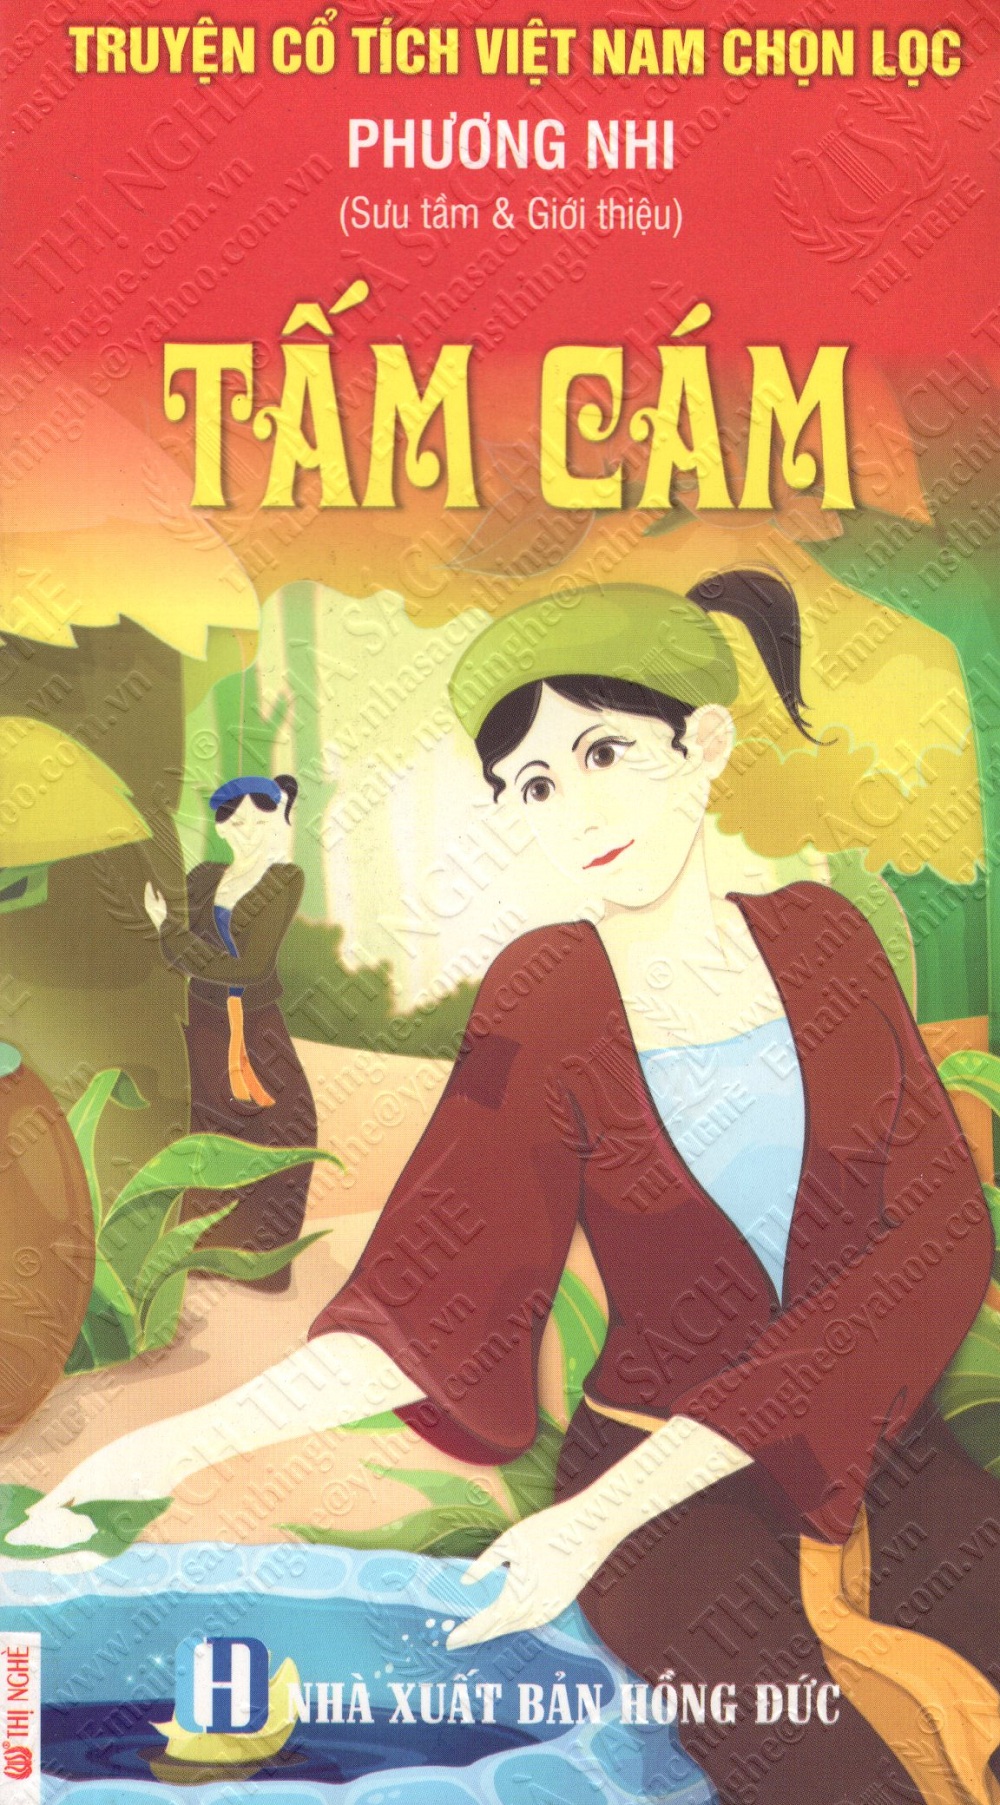 Mua Truyện Cổ Tích Việt Nam Chọn Lọc: Tấm Cám | Tiki